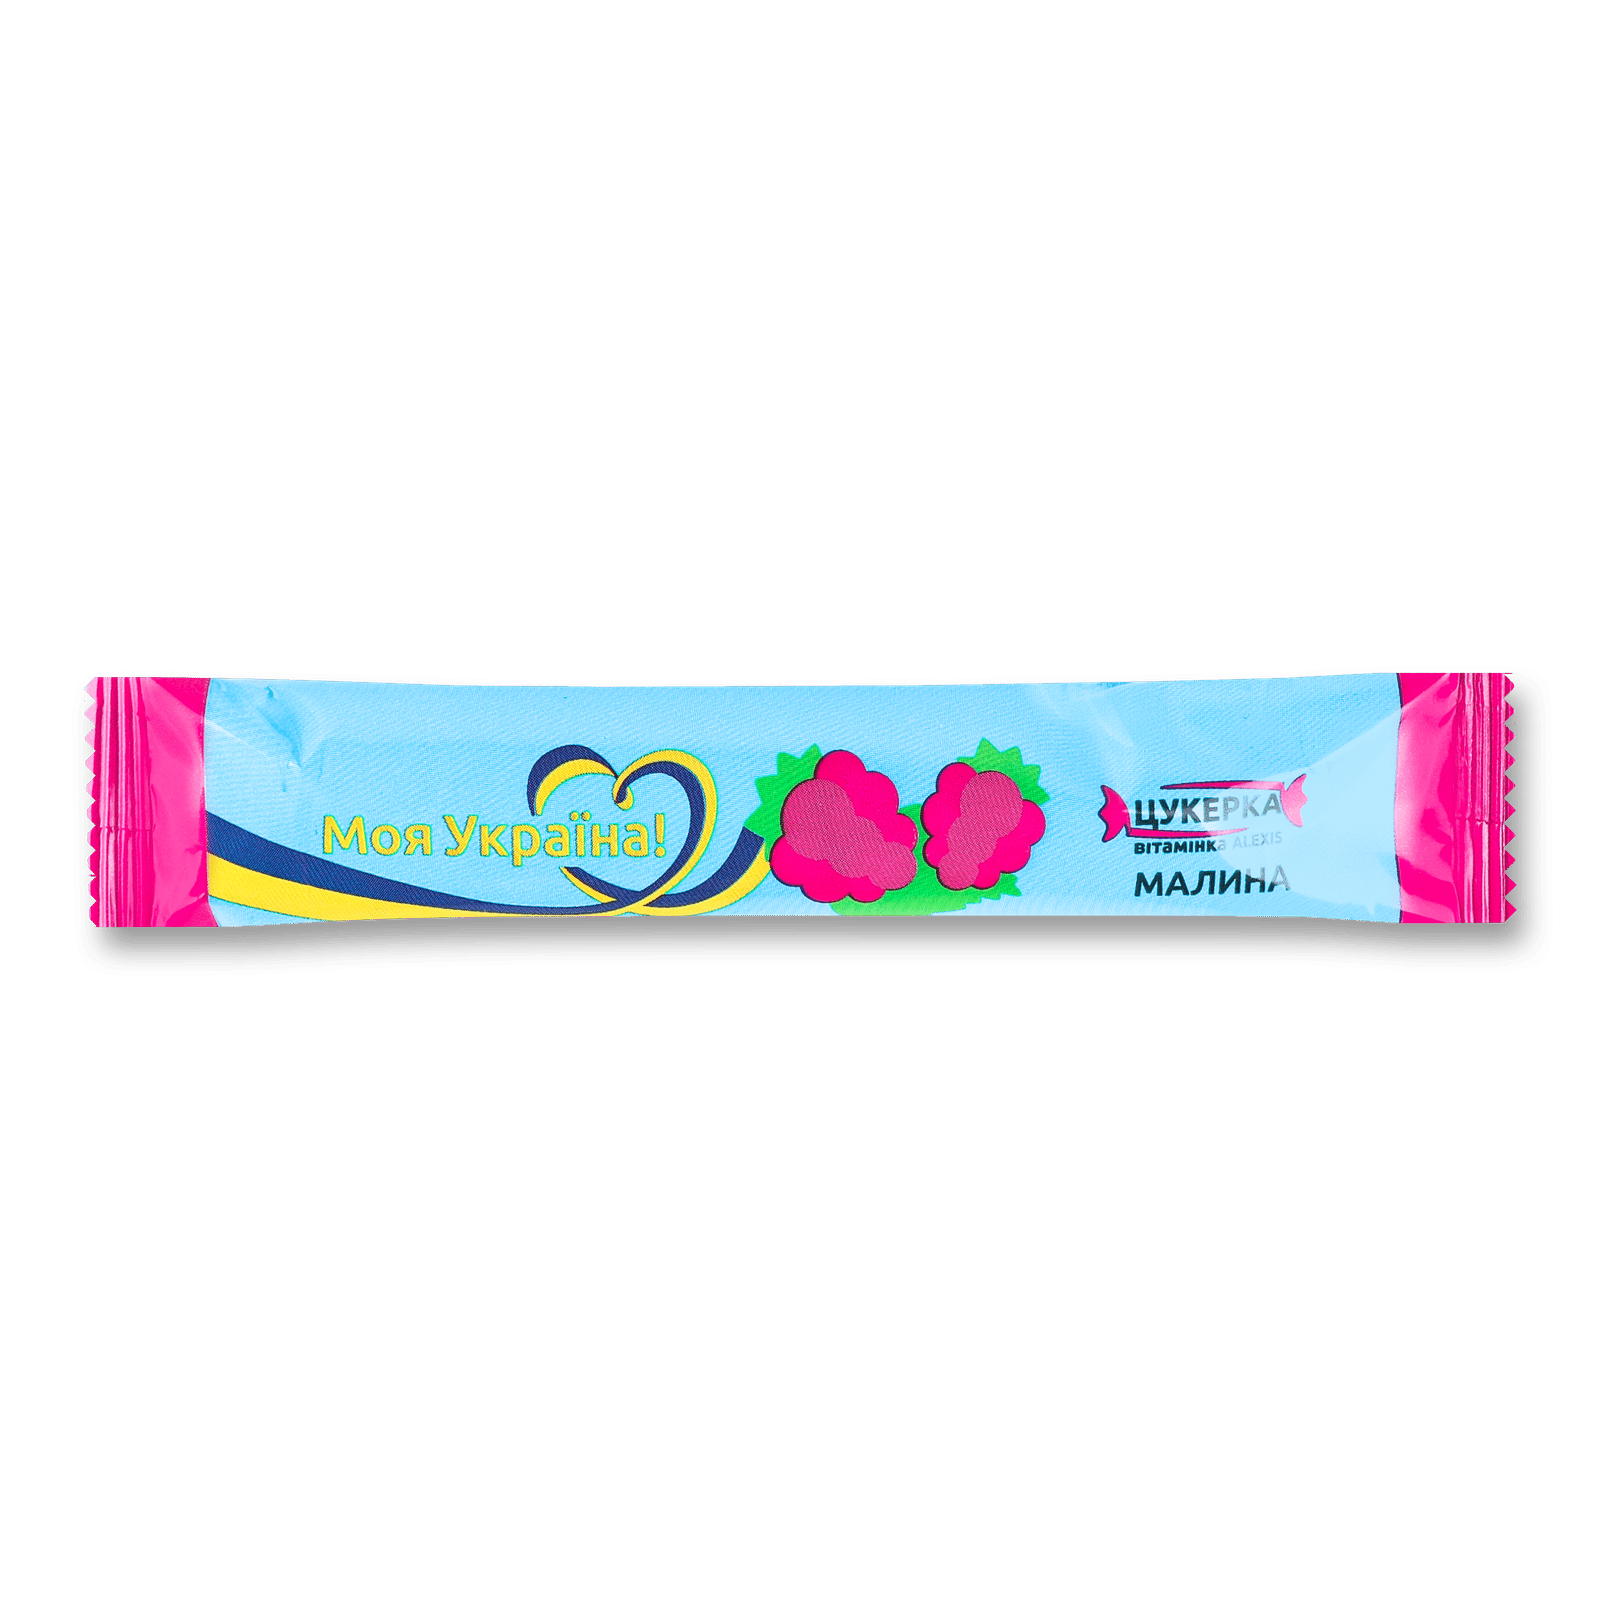 Пастила фруктова цукерка-вітамінка малина - 1